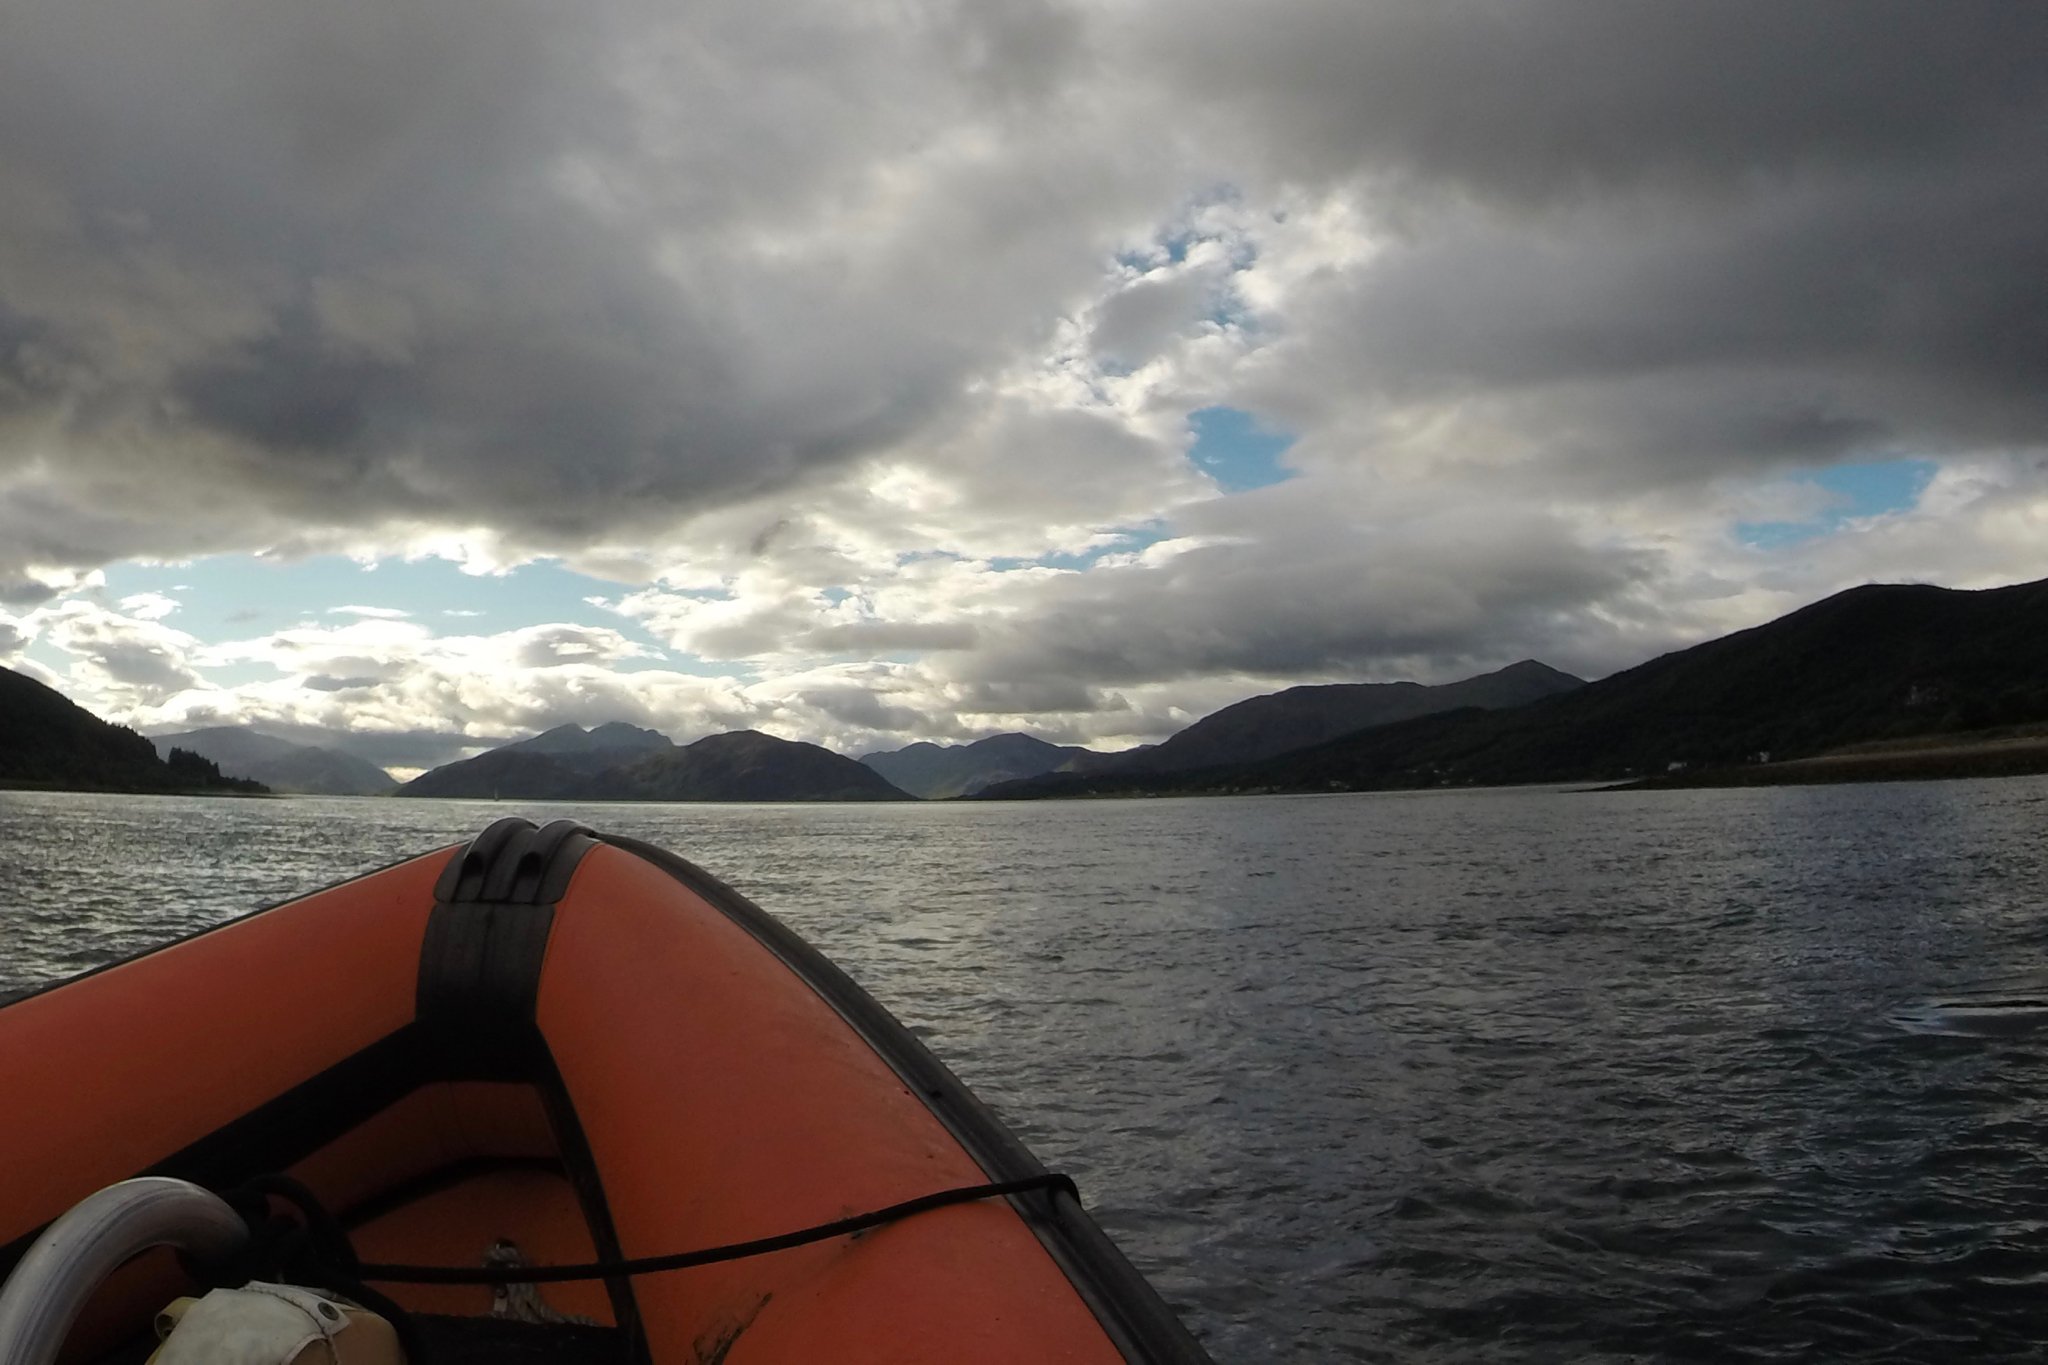 Touring around Loch Leven aboard the SeaXplorer at Glencoe